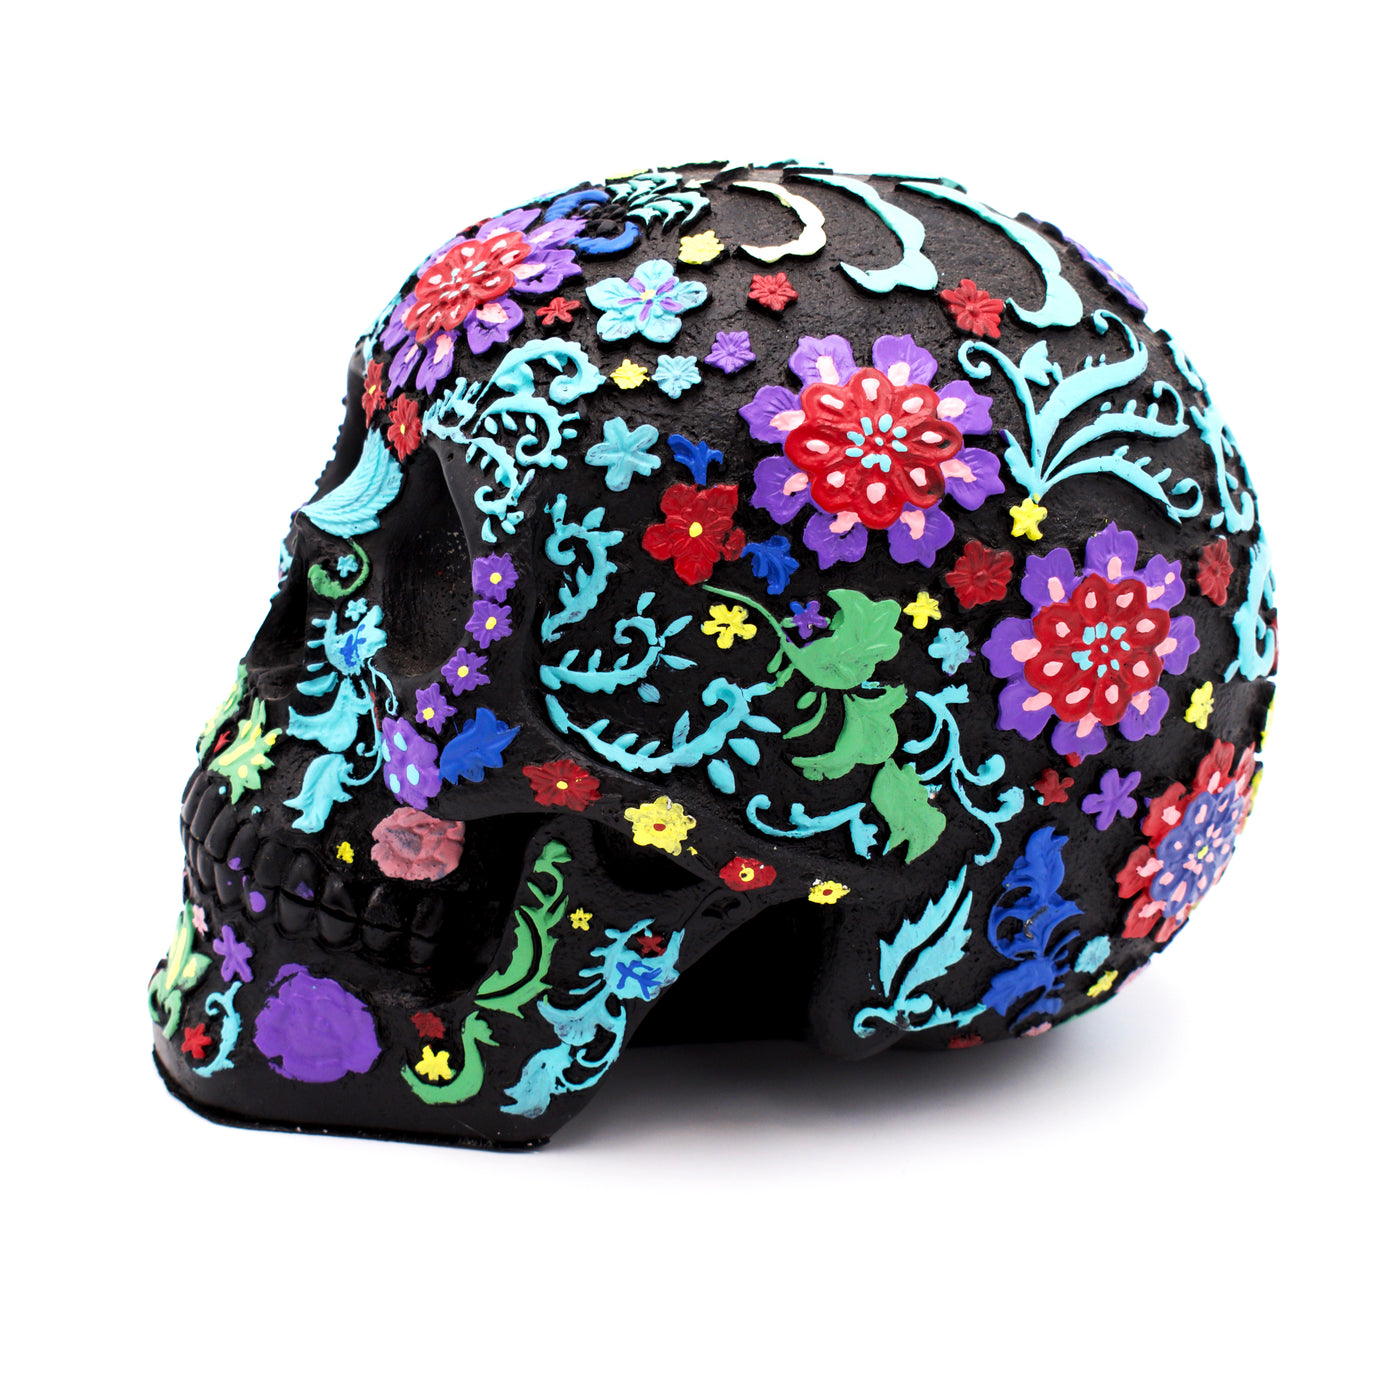 Colorful Floral Design Skull Sculpture